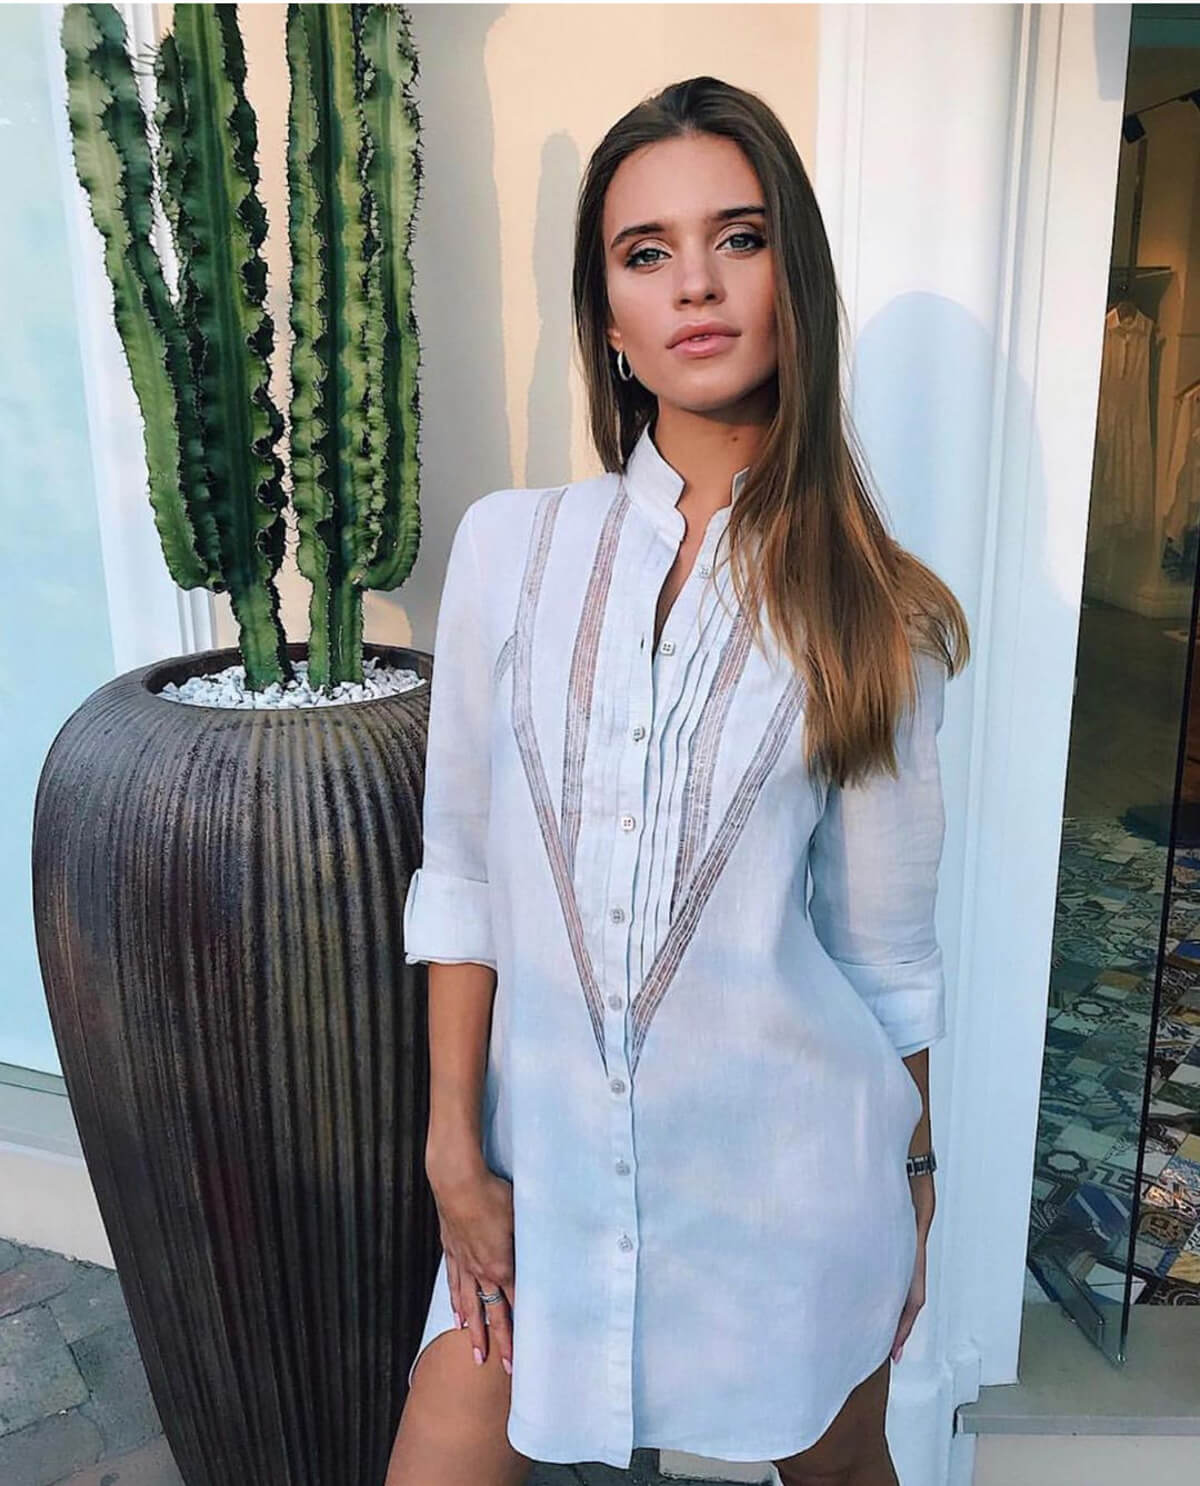 Camicia Royal 100% Capri white linen shirt worn by model